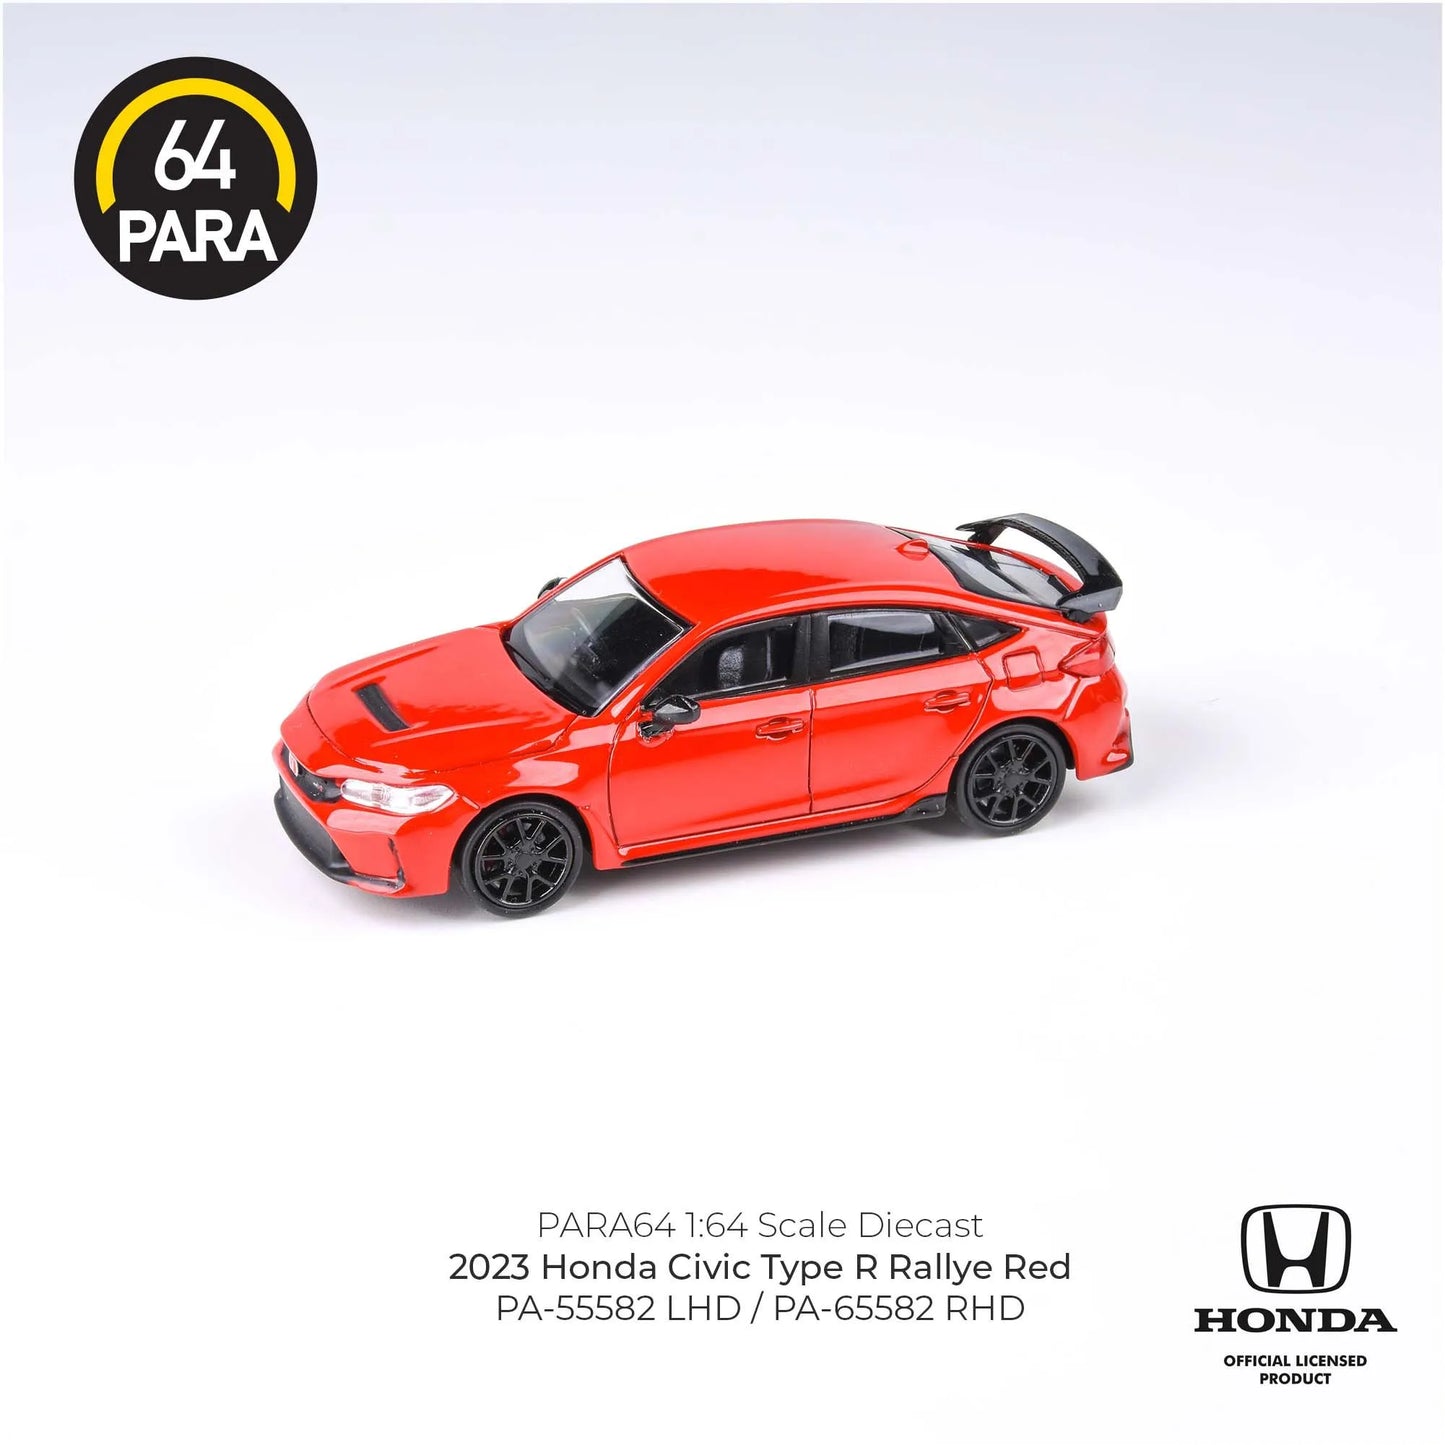 PARA64 2023 Civic Type R Rallye Red 1:64